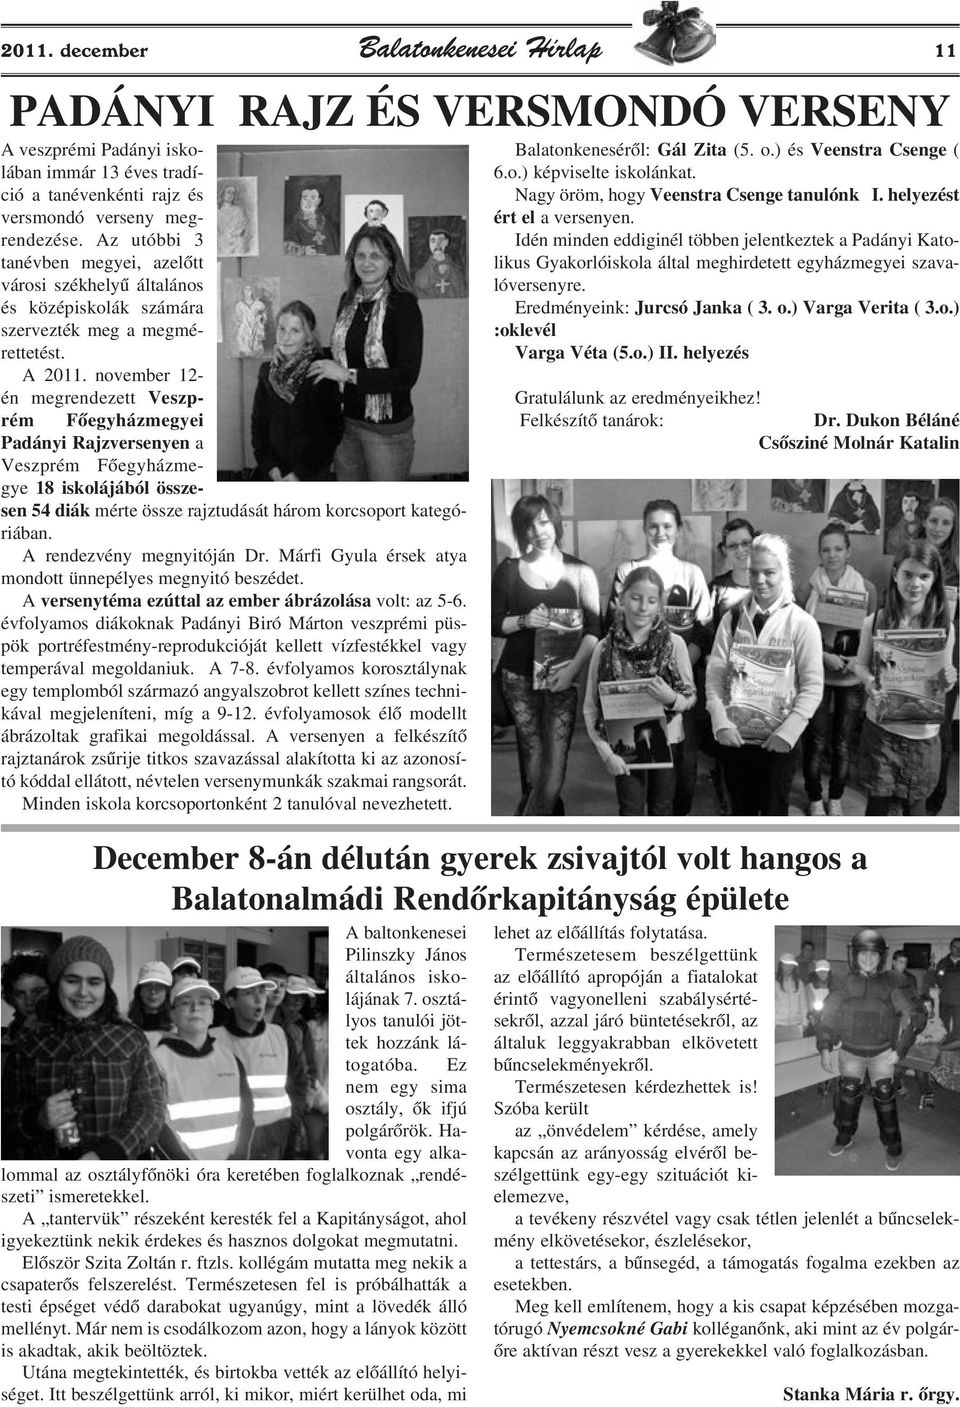 november 12- én megrendezett Veszprém Fõegyházmegyei Padányi Rajzversenyen a Veszprém Fõegyházmegye 18 iskolájából összesen 54 diák mérte össze rajztudását három korcsoport kategóriában.